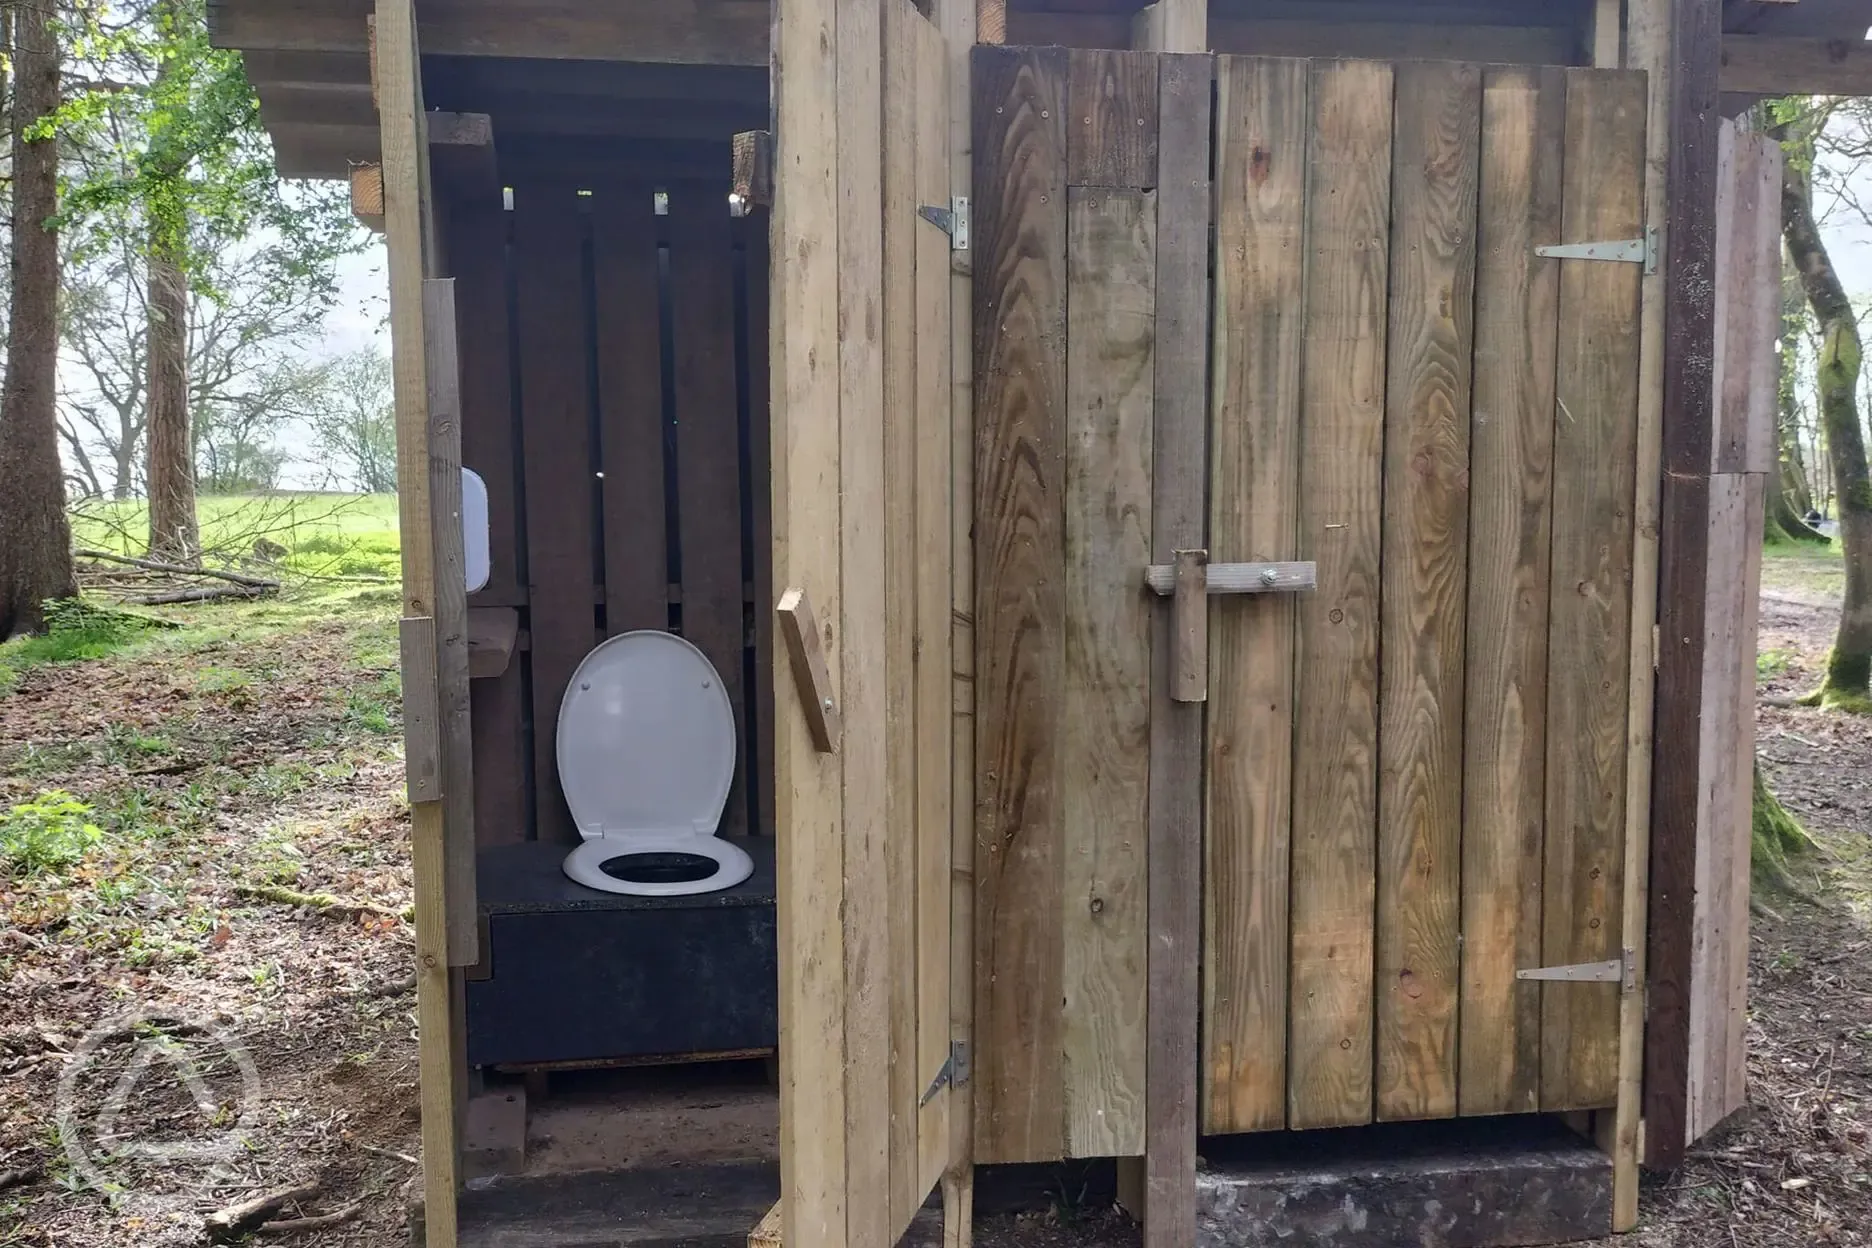 Toilet facility